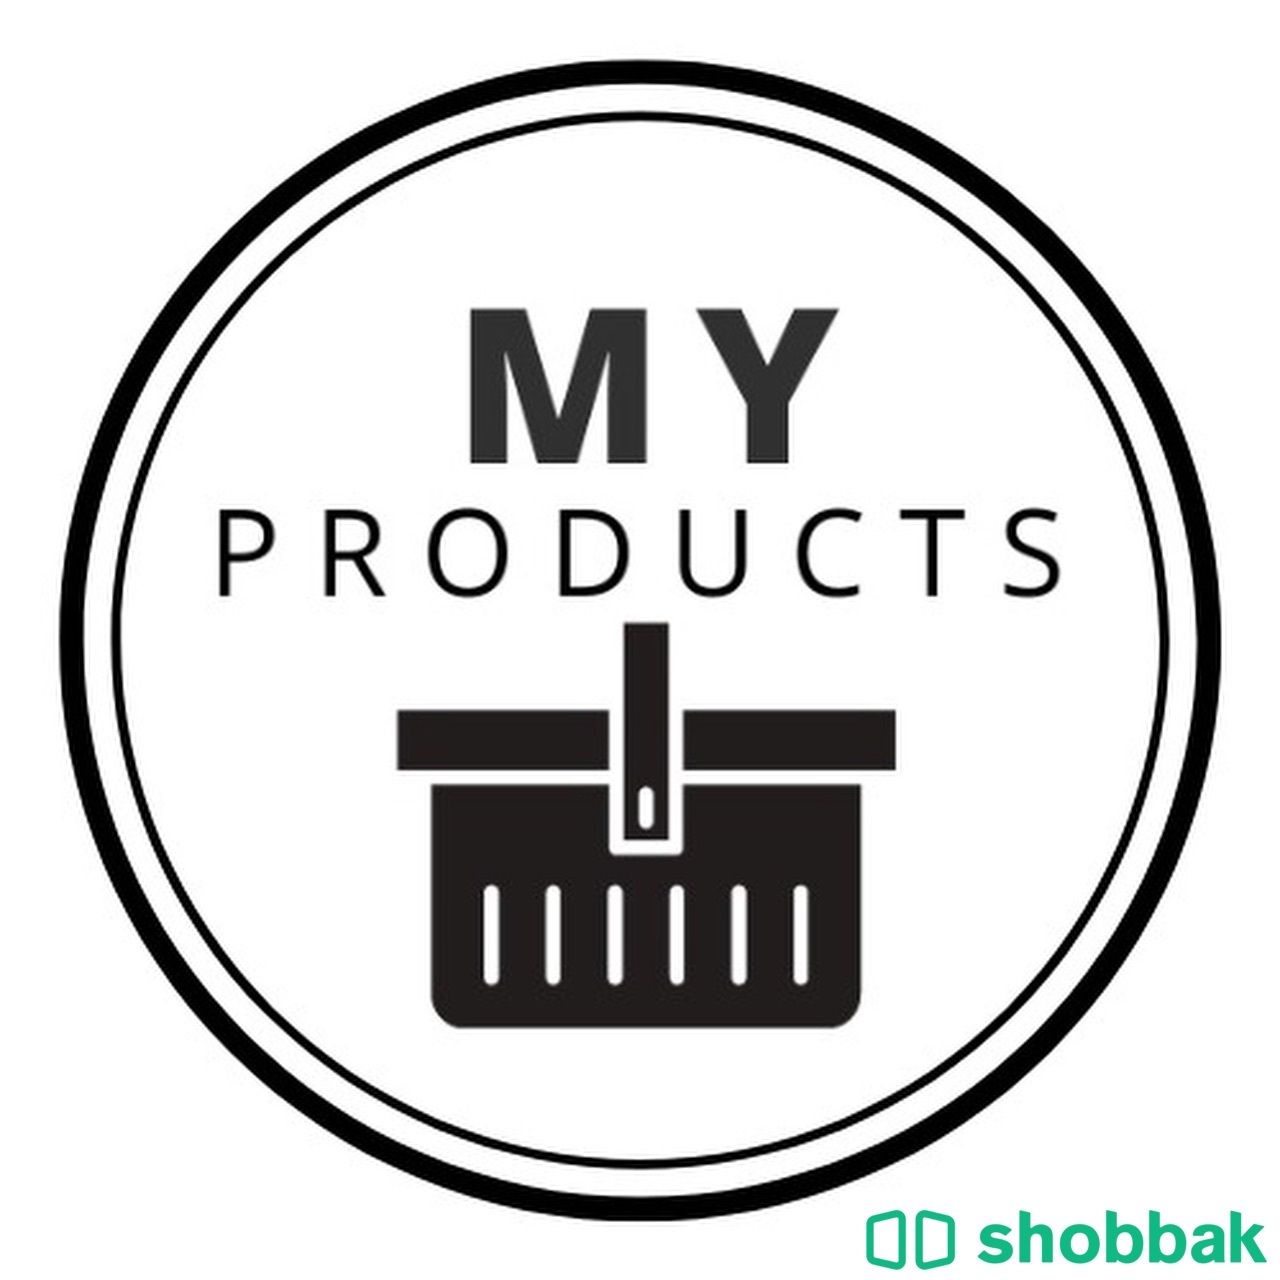 متجر اللكتروني للبيع  Shobbak Saudi Arabia